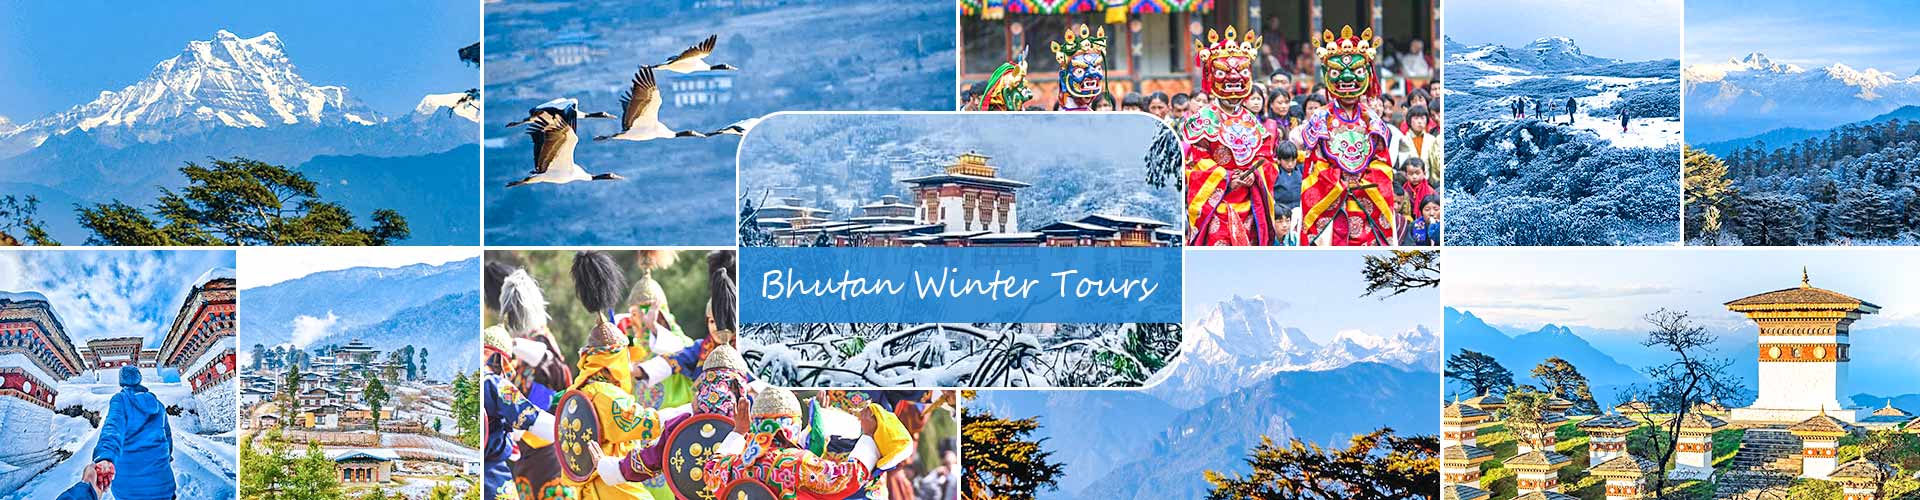 Bhutan Winter Tours